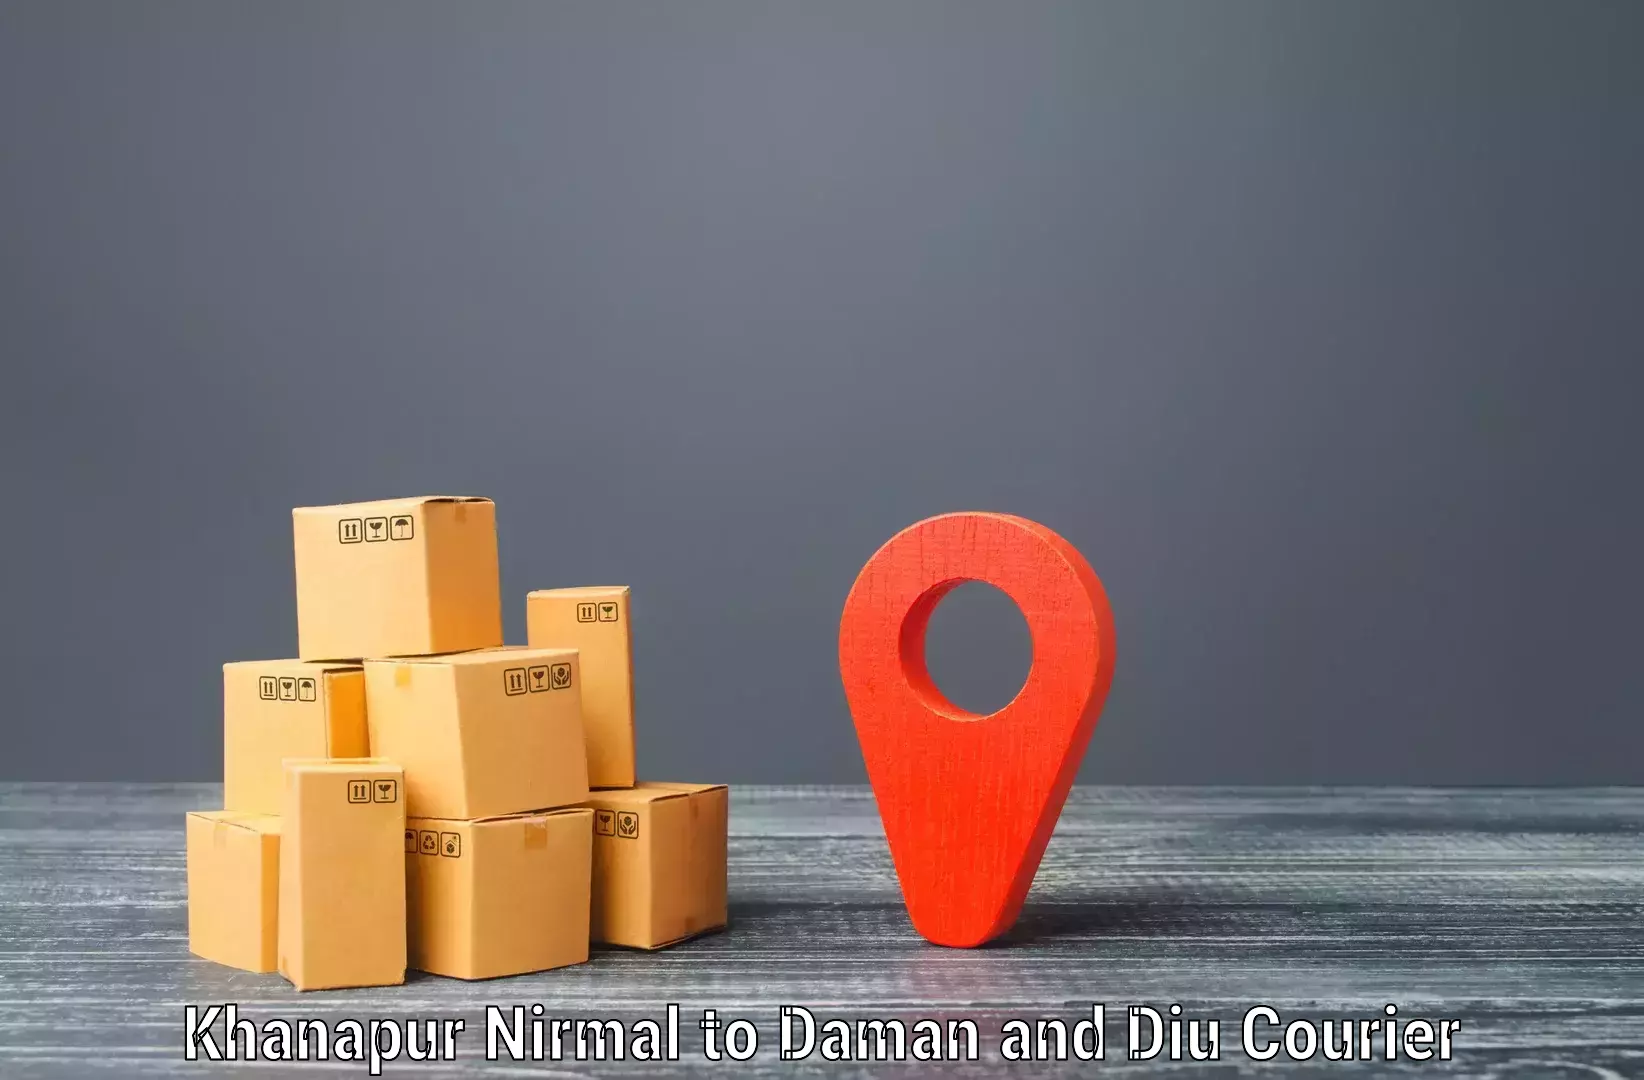 Reliable courier services Khanapur Nirmal to Daman